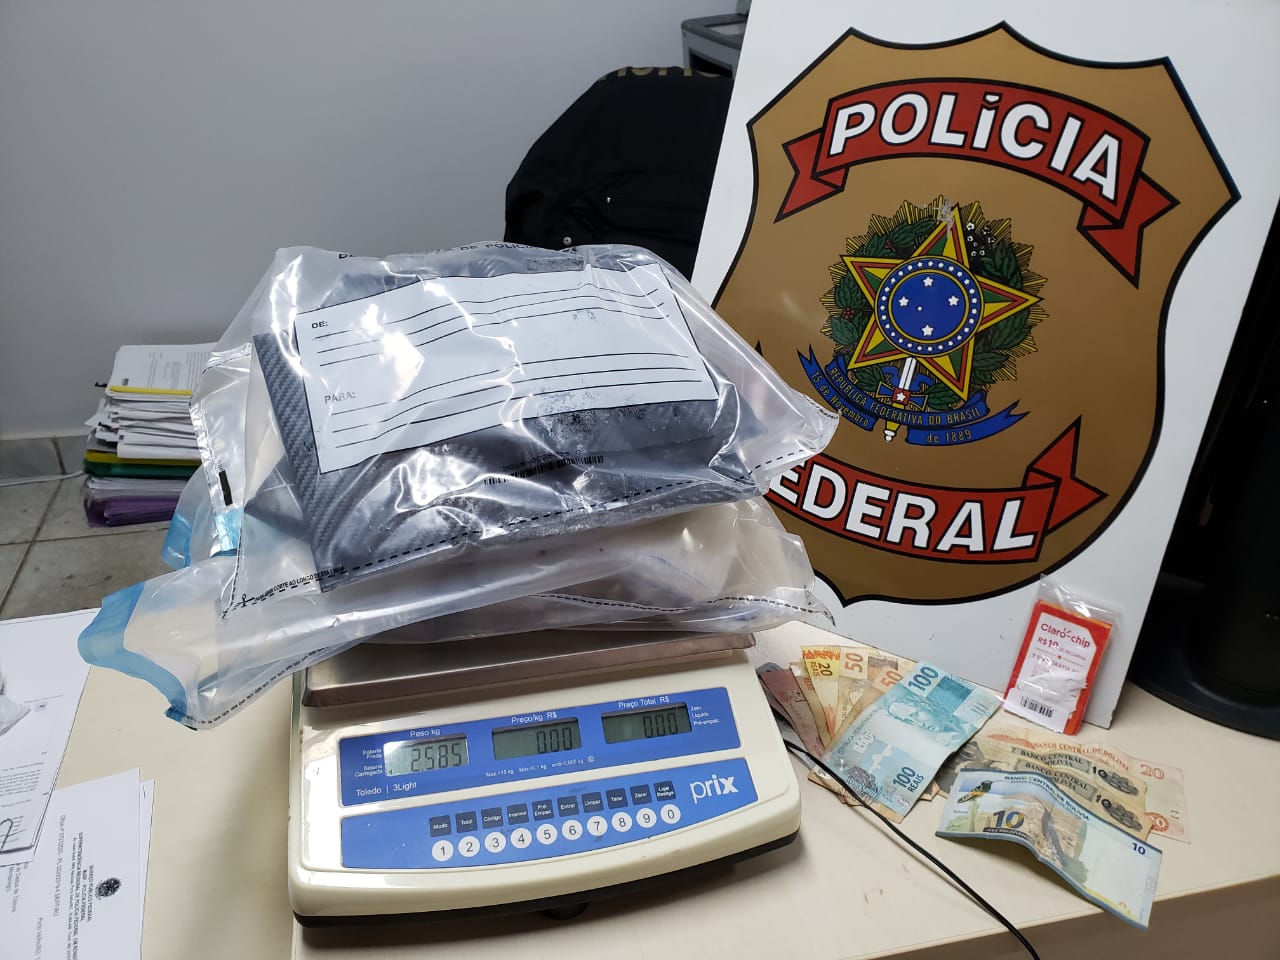 RONDÔNIA: Polícia Federal cumpre mandado de prisão de suspeito após tentativa de enviar grande quantidade de drogas por Correios